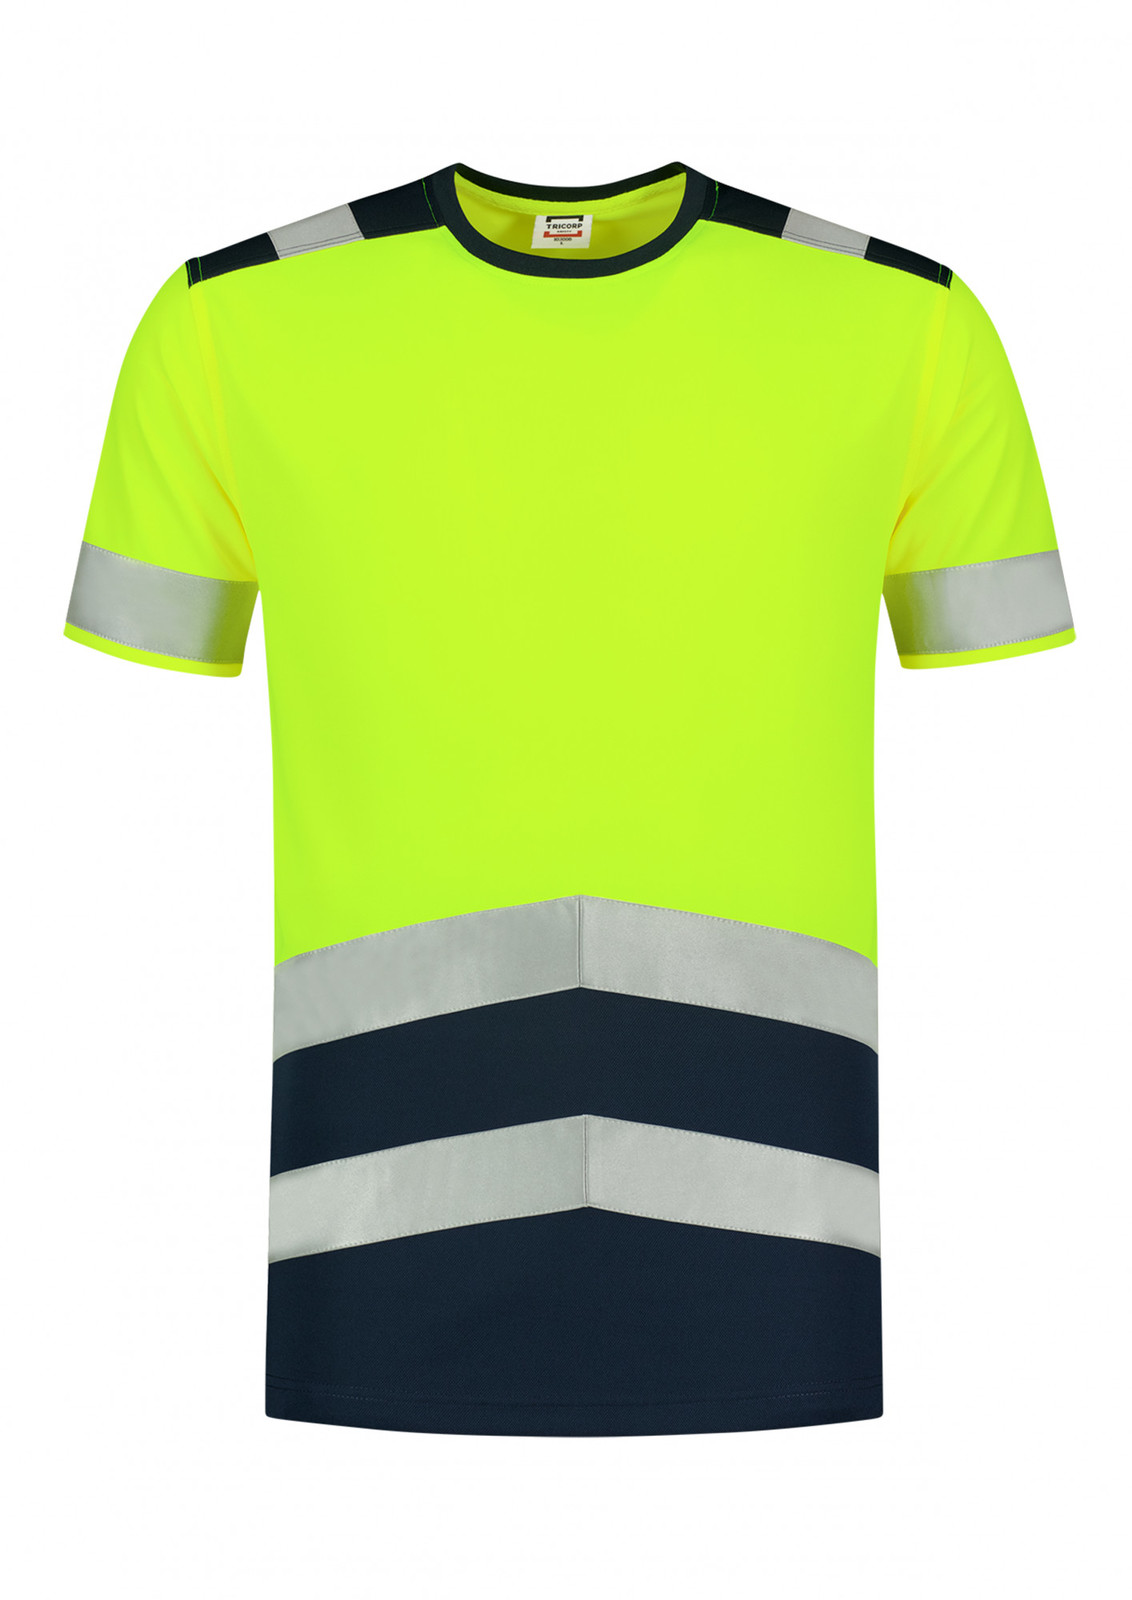 Unisex reflexné tričko Tricorp High Vis Bicolor T01 - veľkosť: L, farba: fluorescenčno žltá